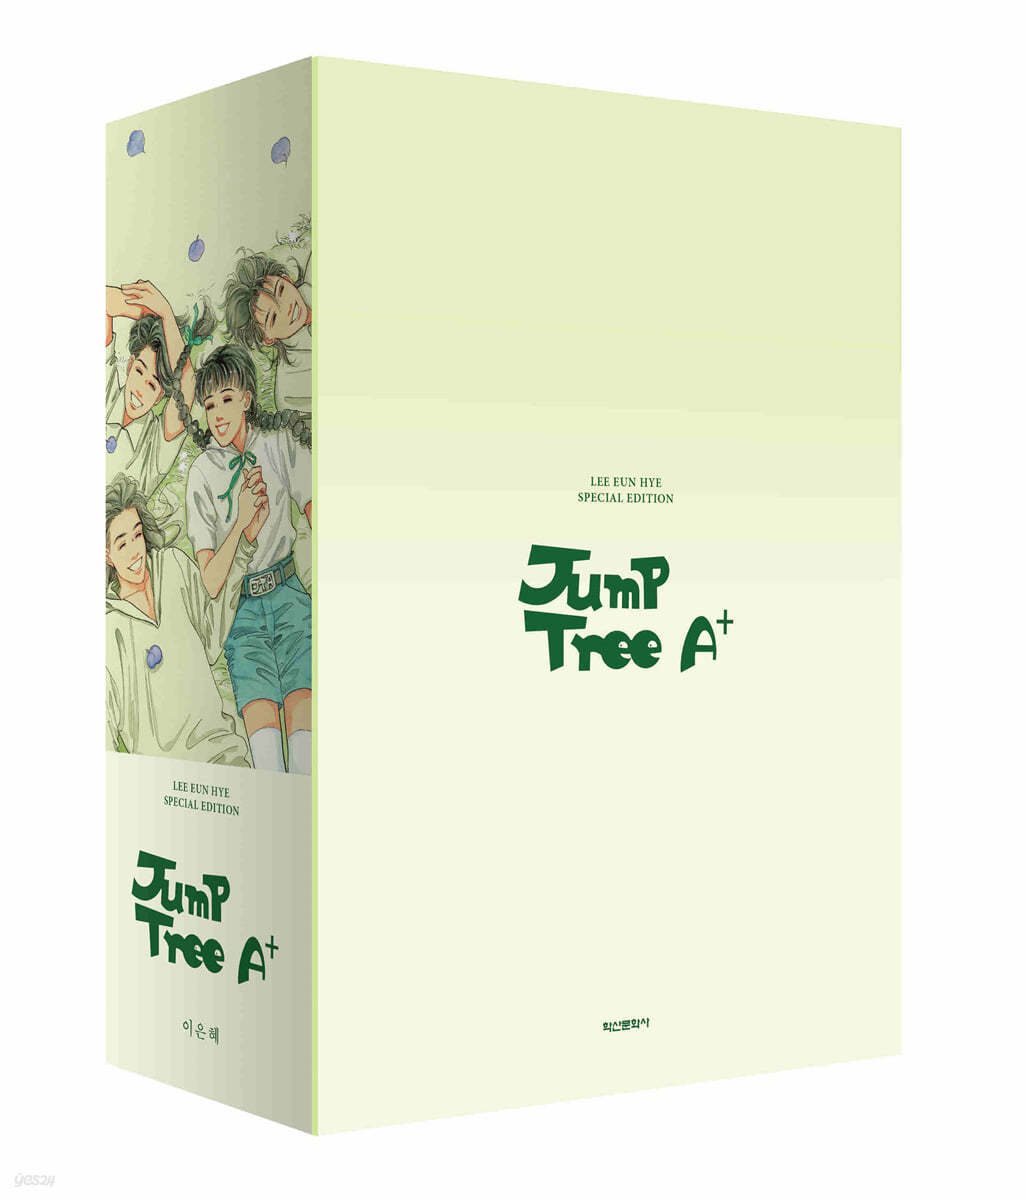 Jump Tree A+ (이은혜 스페셜 에디션) 박스 세트